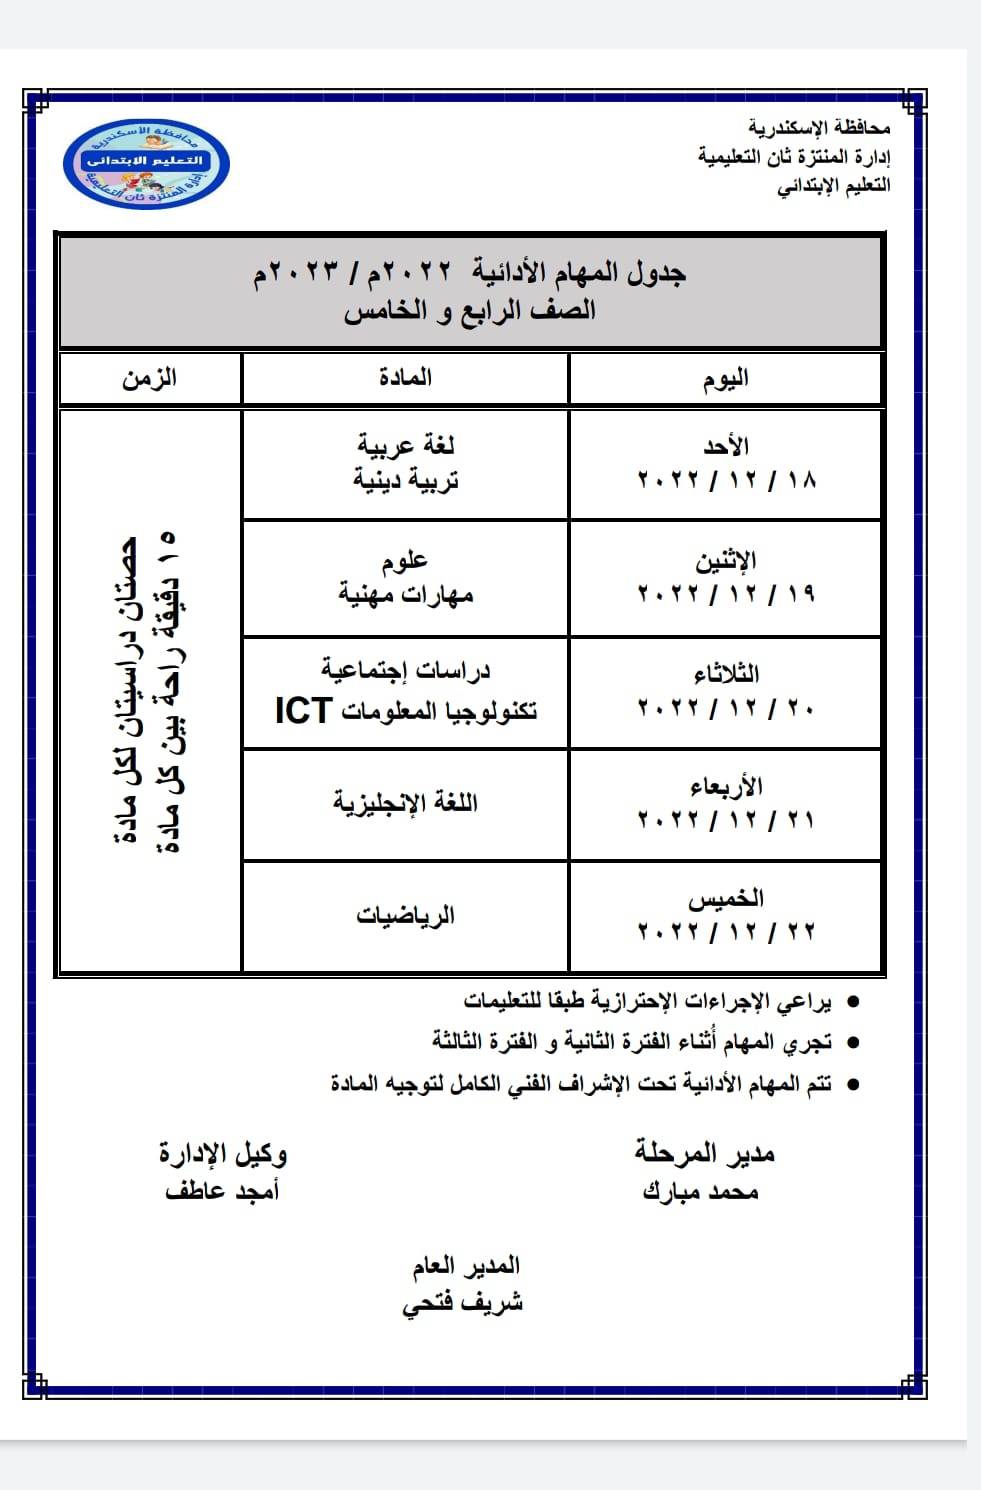 جدول المهام الأدائية في الإسكندريةغدا الاحد١٢/١٨ 31964510